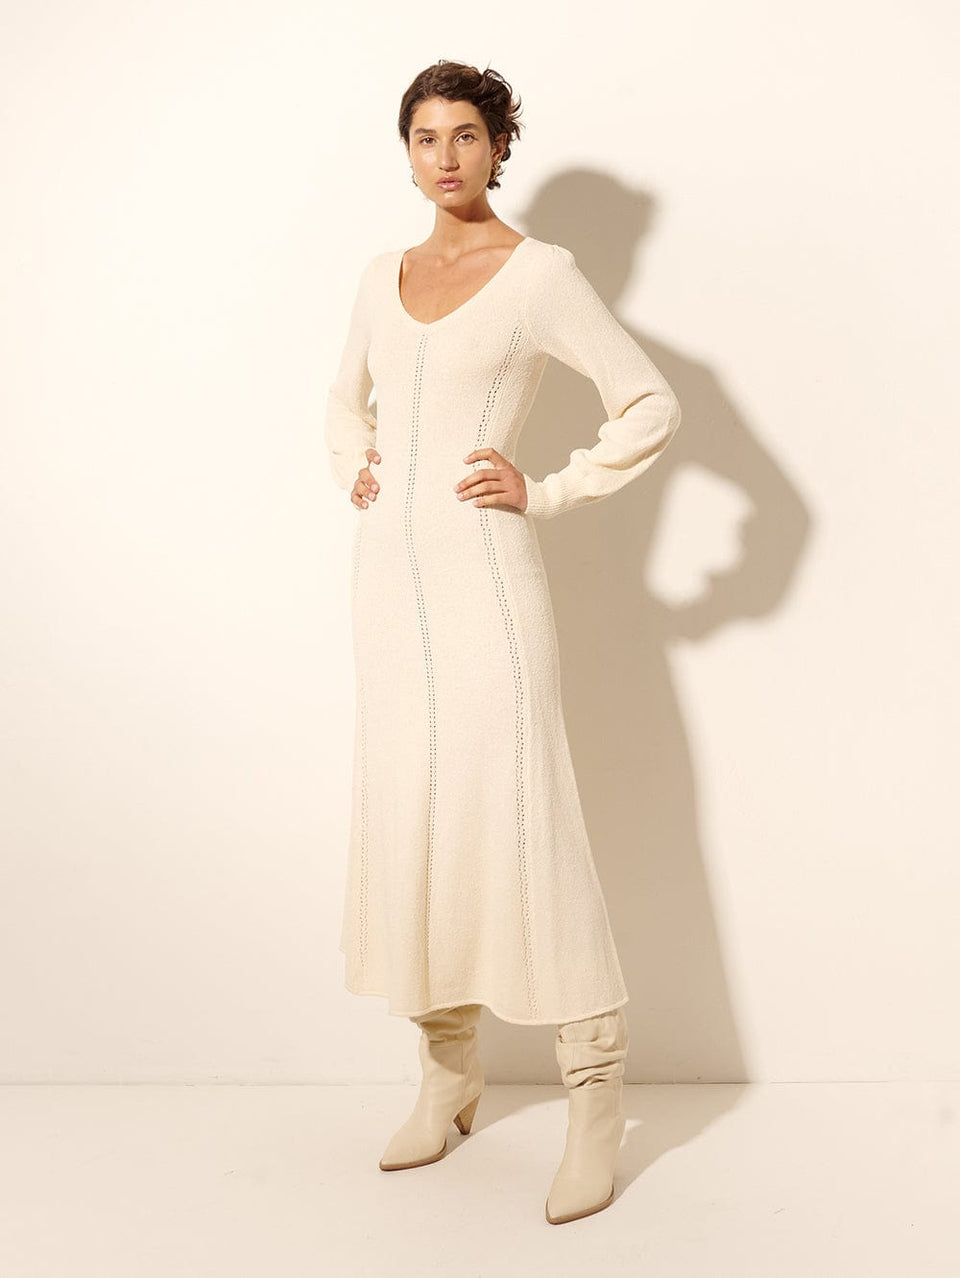 Cali Knit Dress KIVARI | Model wears cream knit midi dress side view